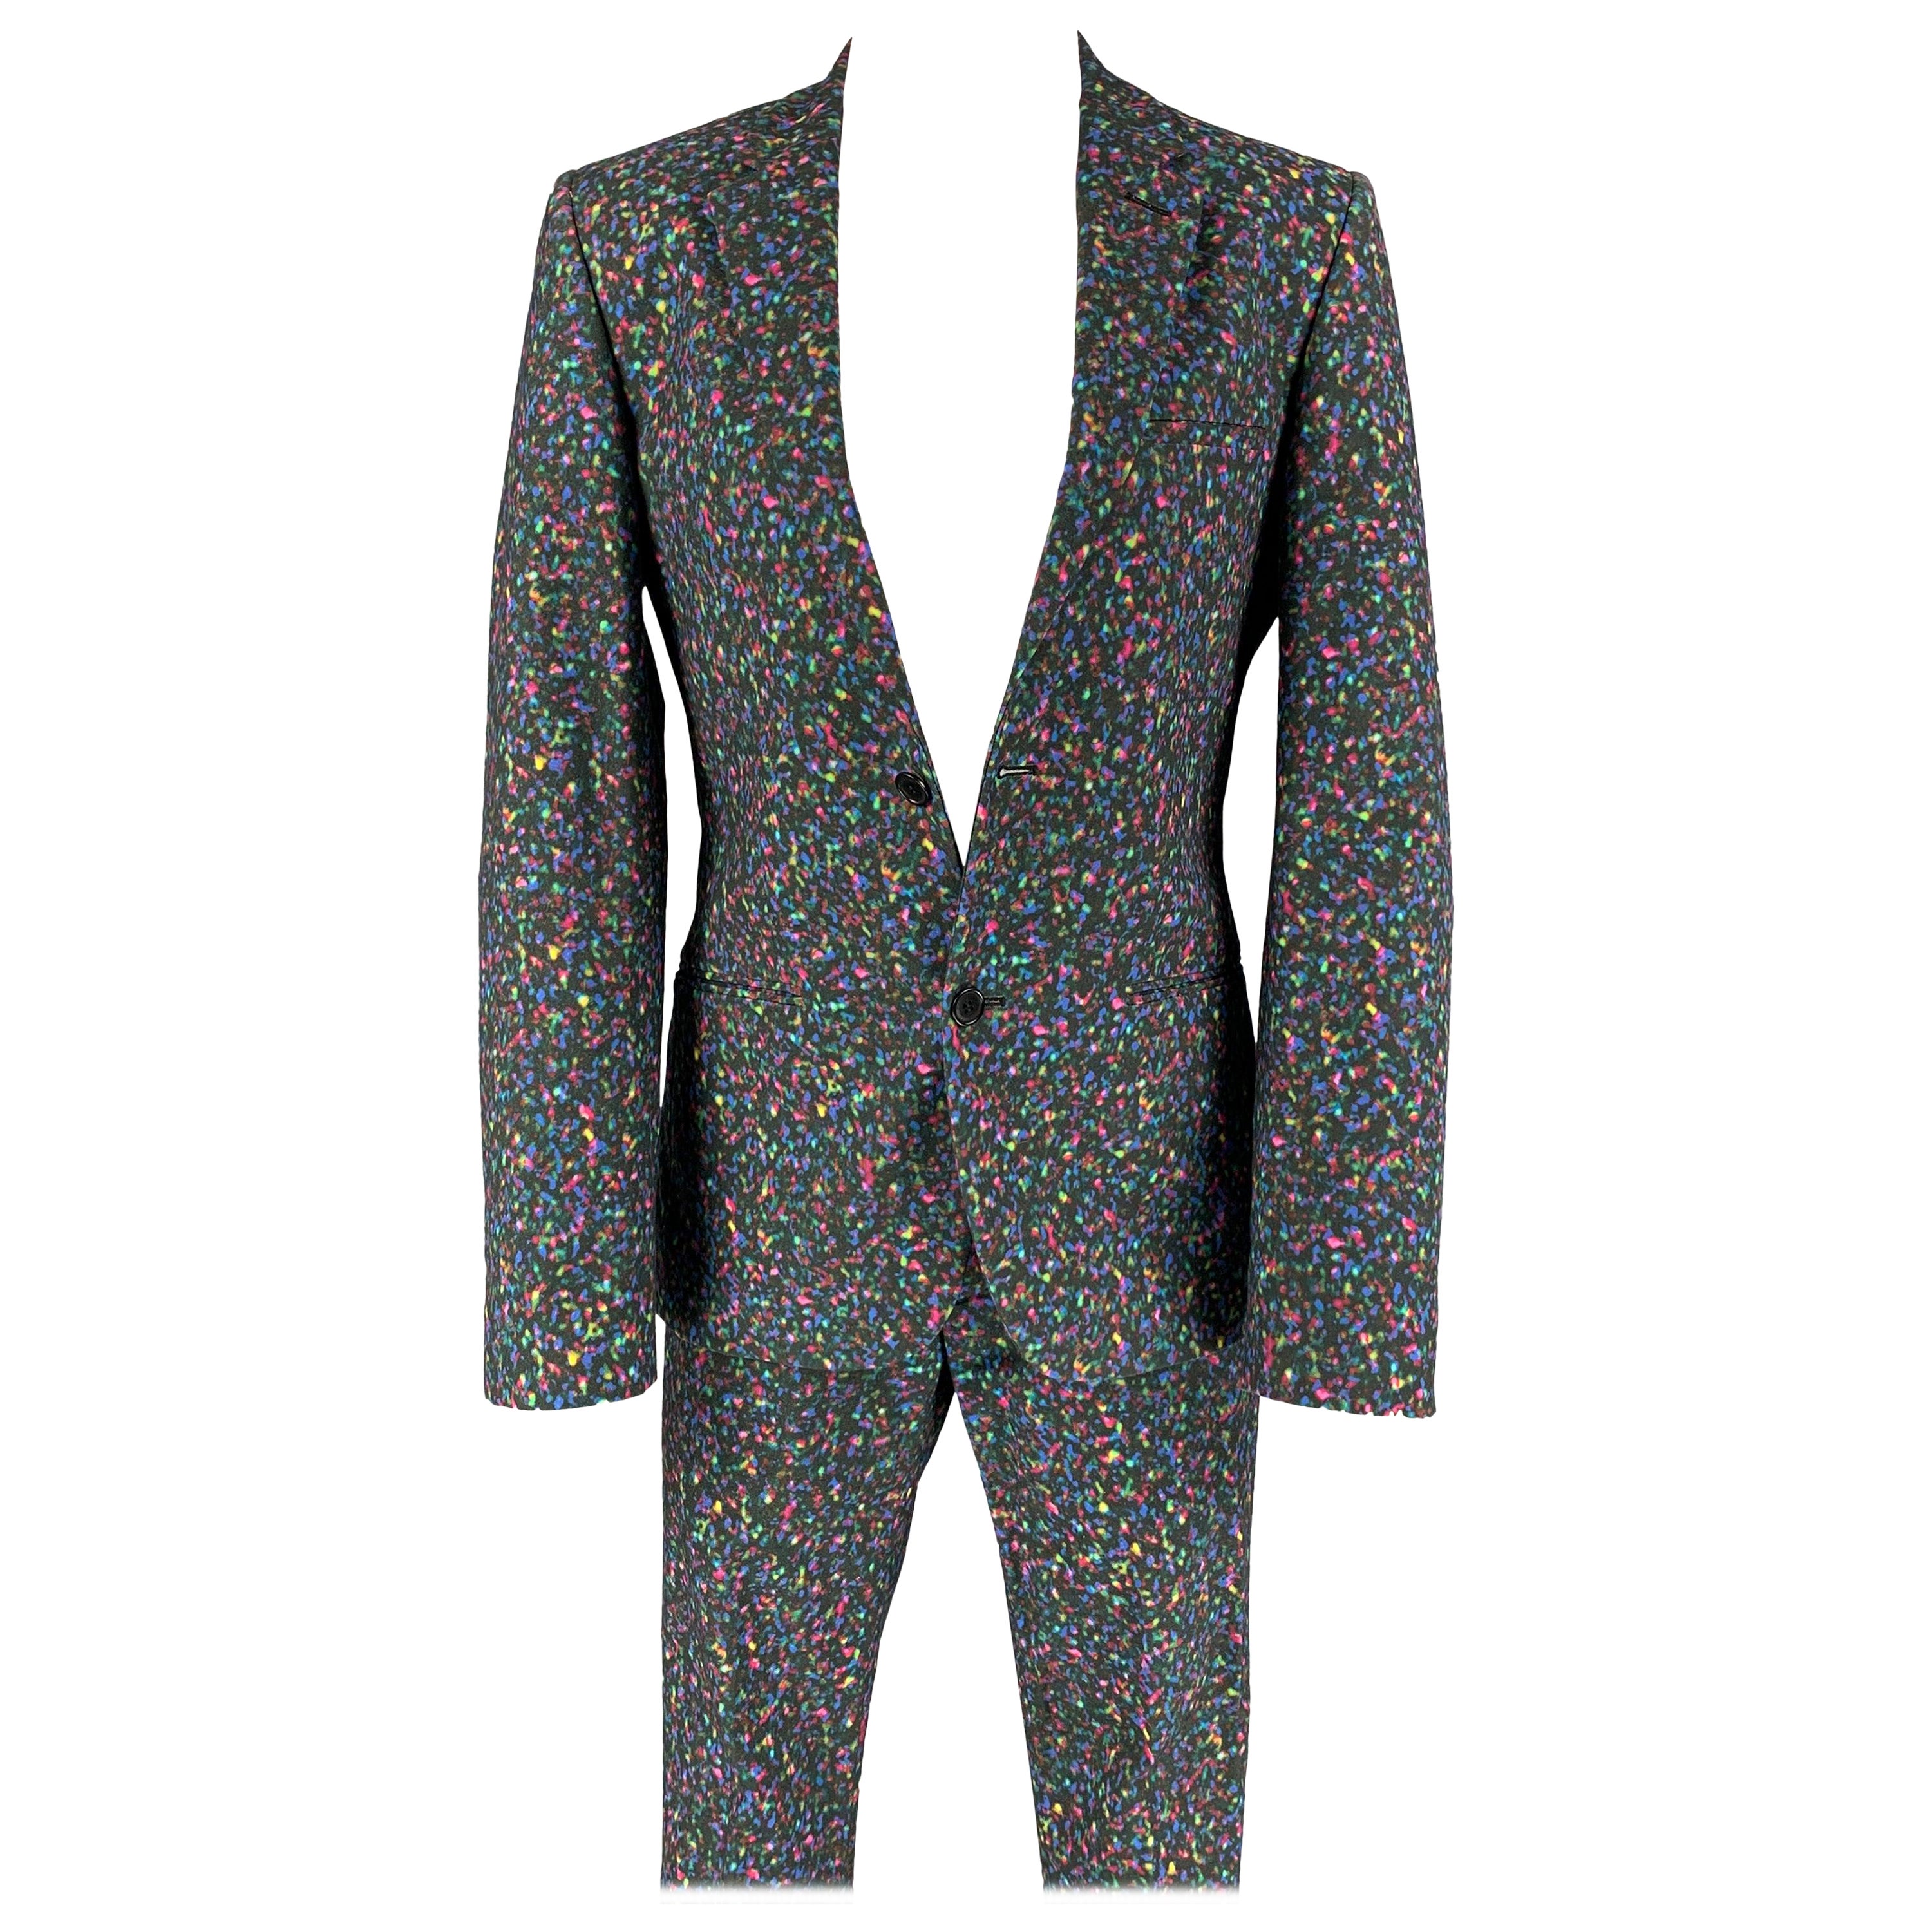 CALVIN KLEIN COLLECTION Size 34 Multi-Color Print Cotton Notch Lapel Suit For Sale